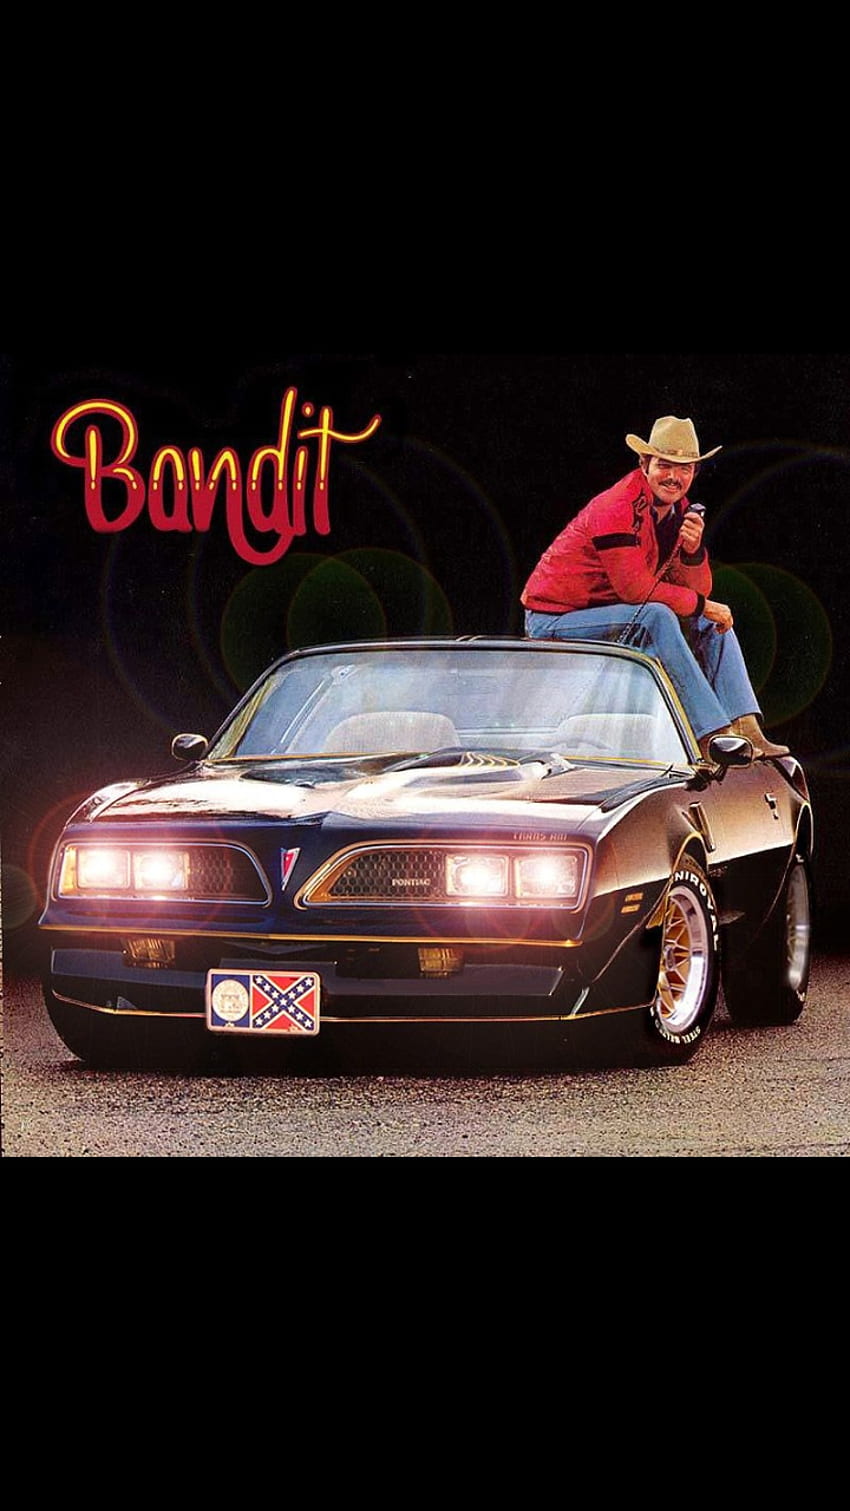 smokey and the bandit car wallpaper